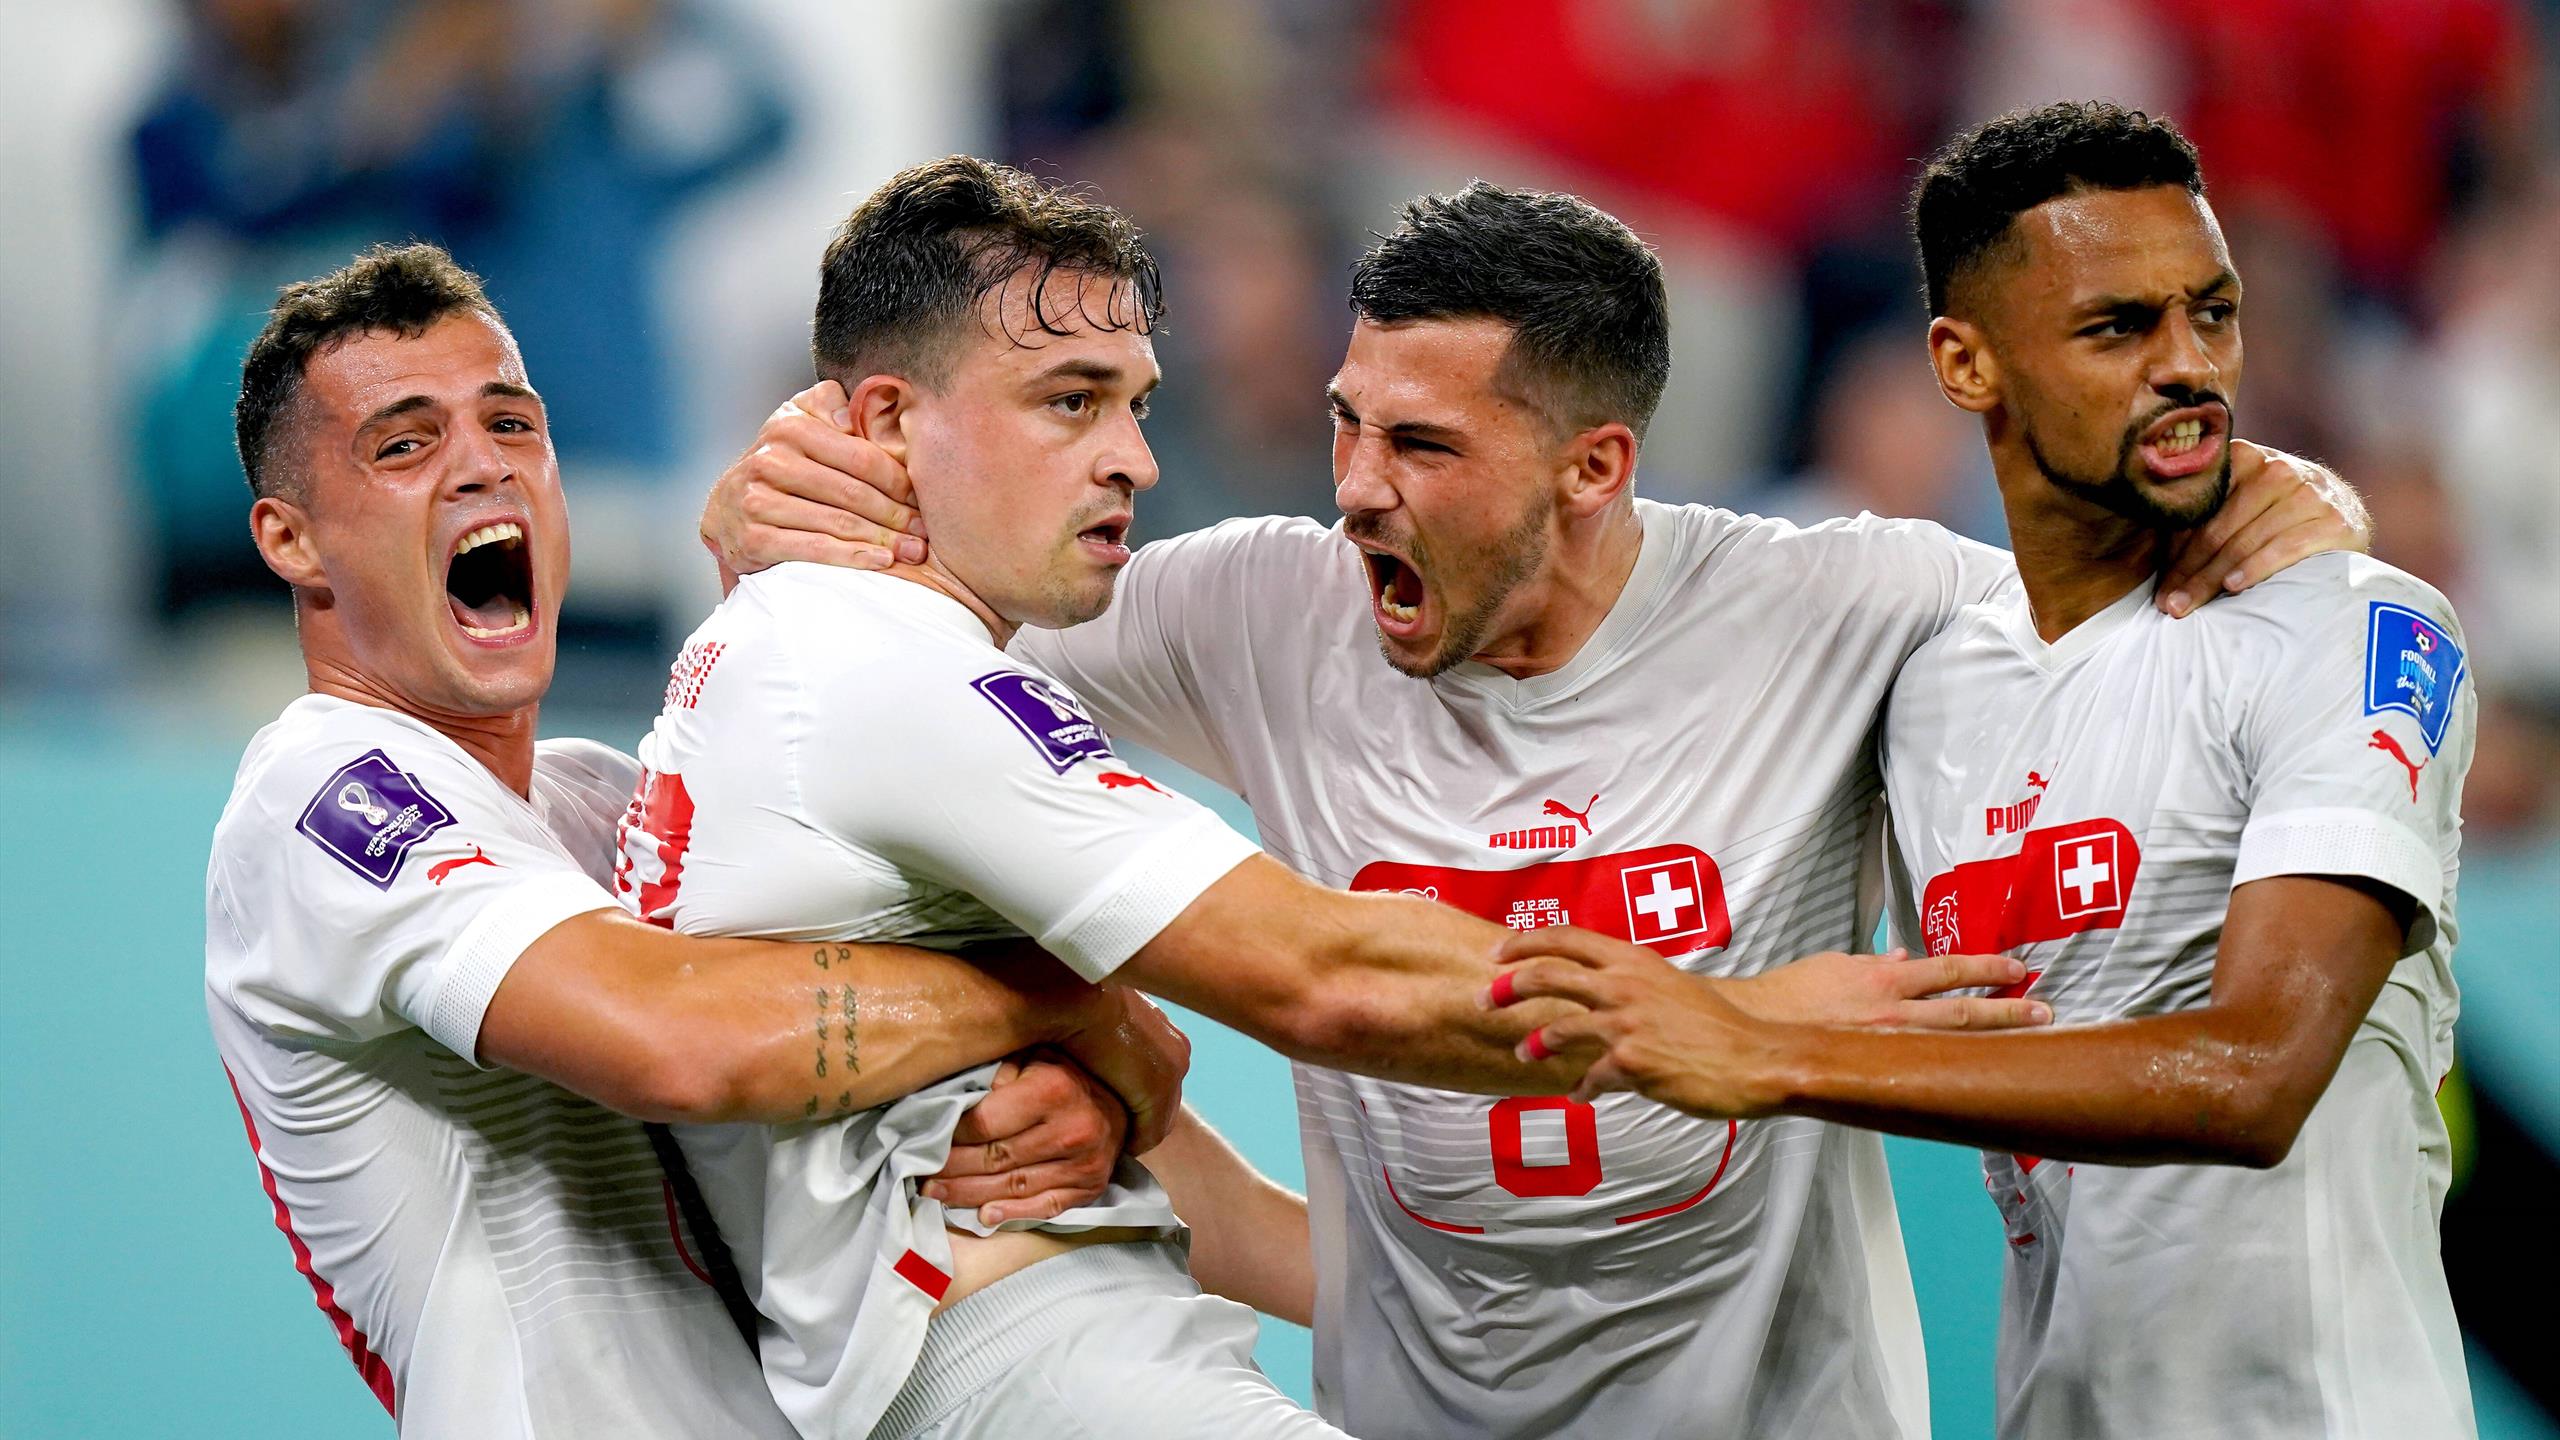 Svizzera agli ottavi con il Portogallo: Serbia battuta 3-2